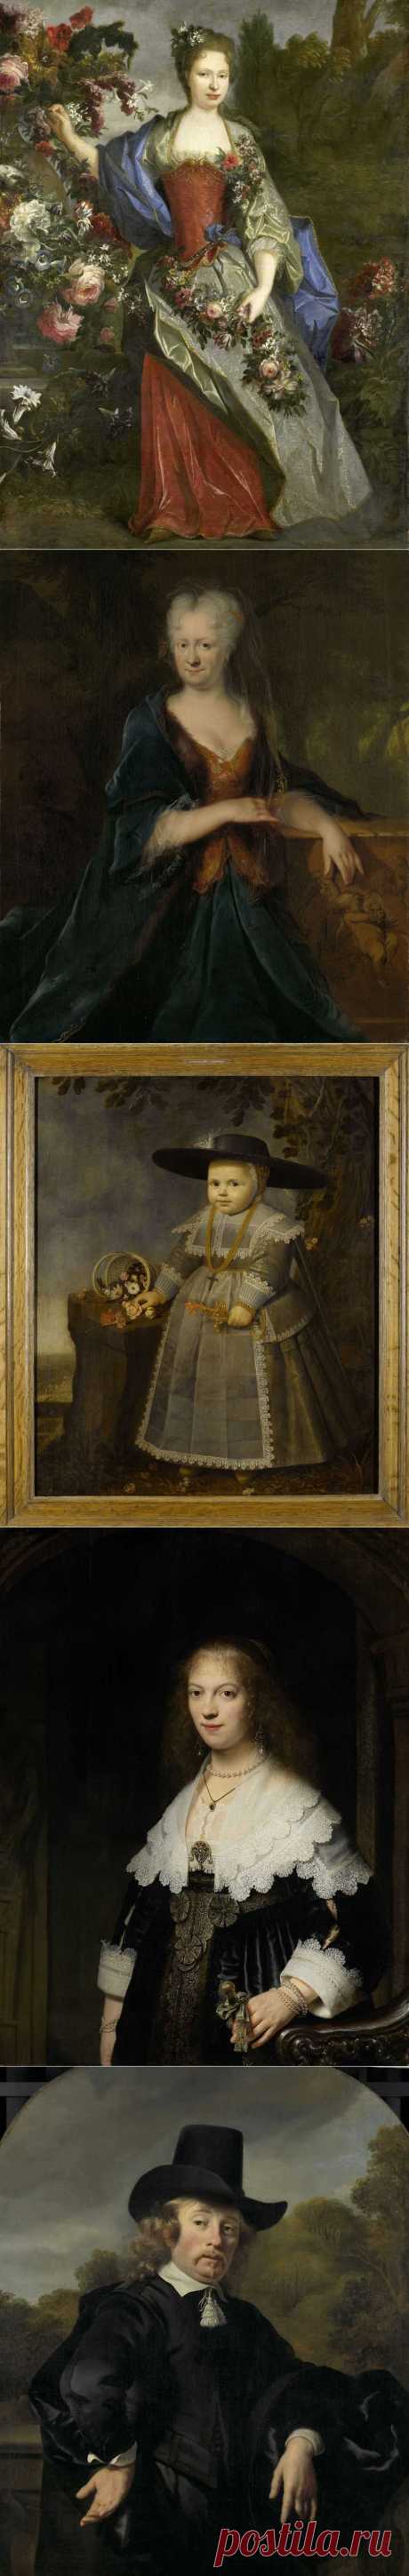 Живописные портреты из коллекции Голландского государственного музея в Амстердаме|Часть вторая